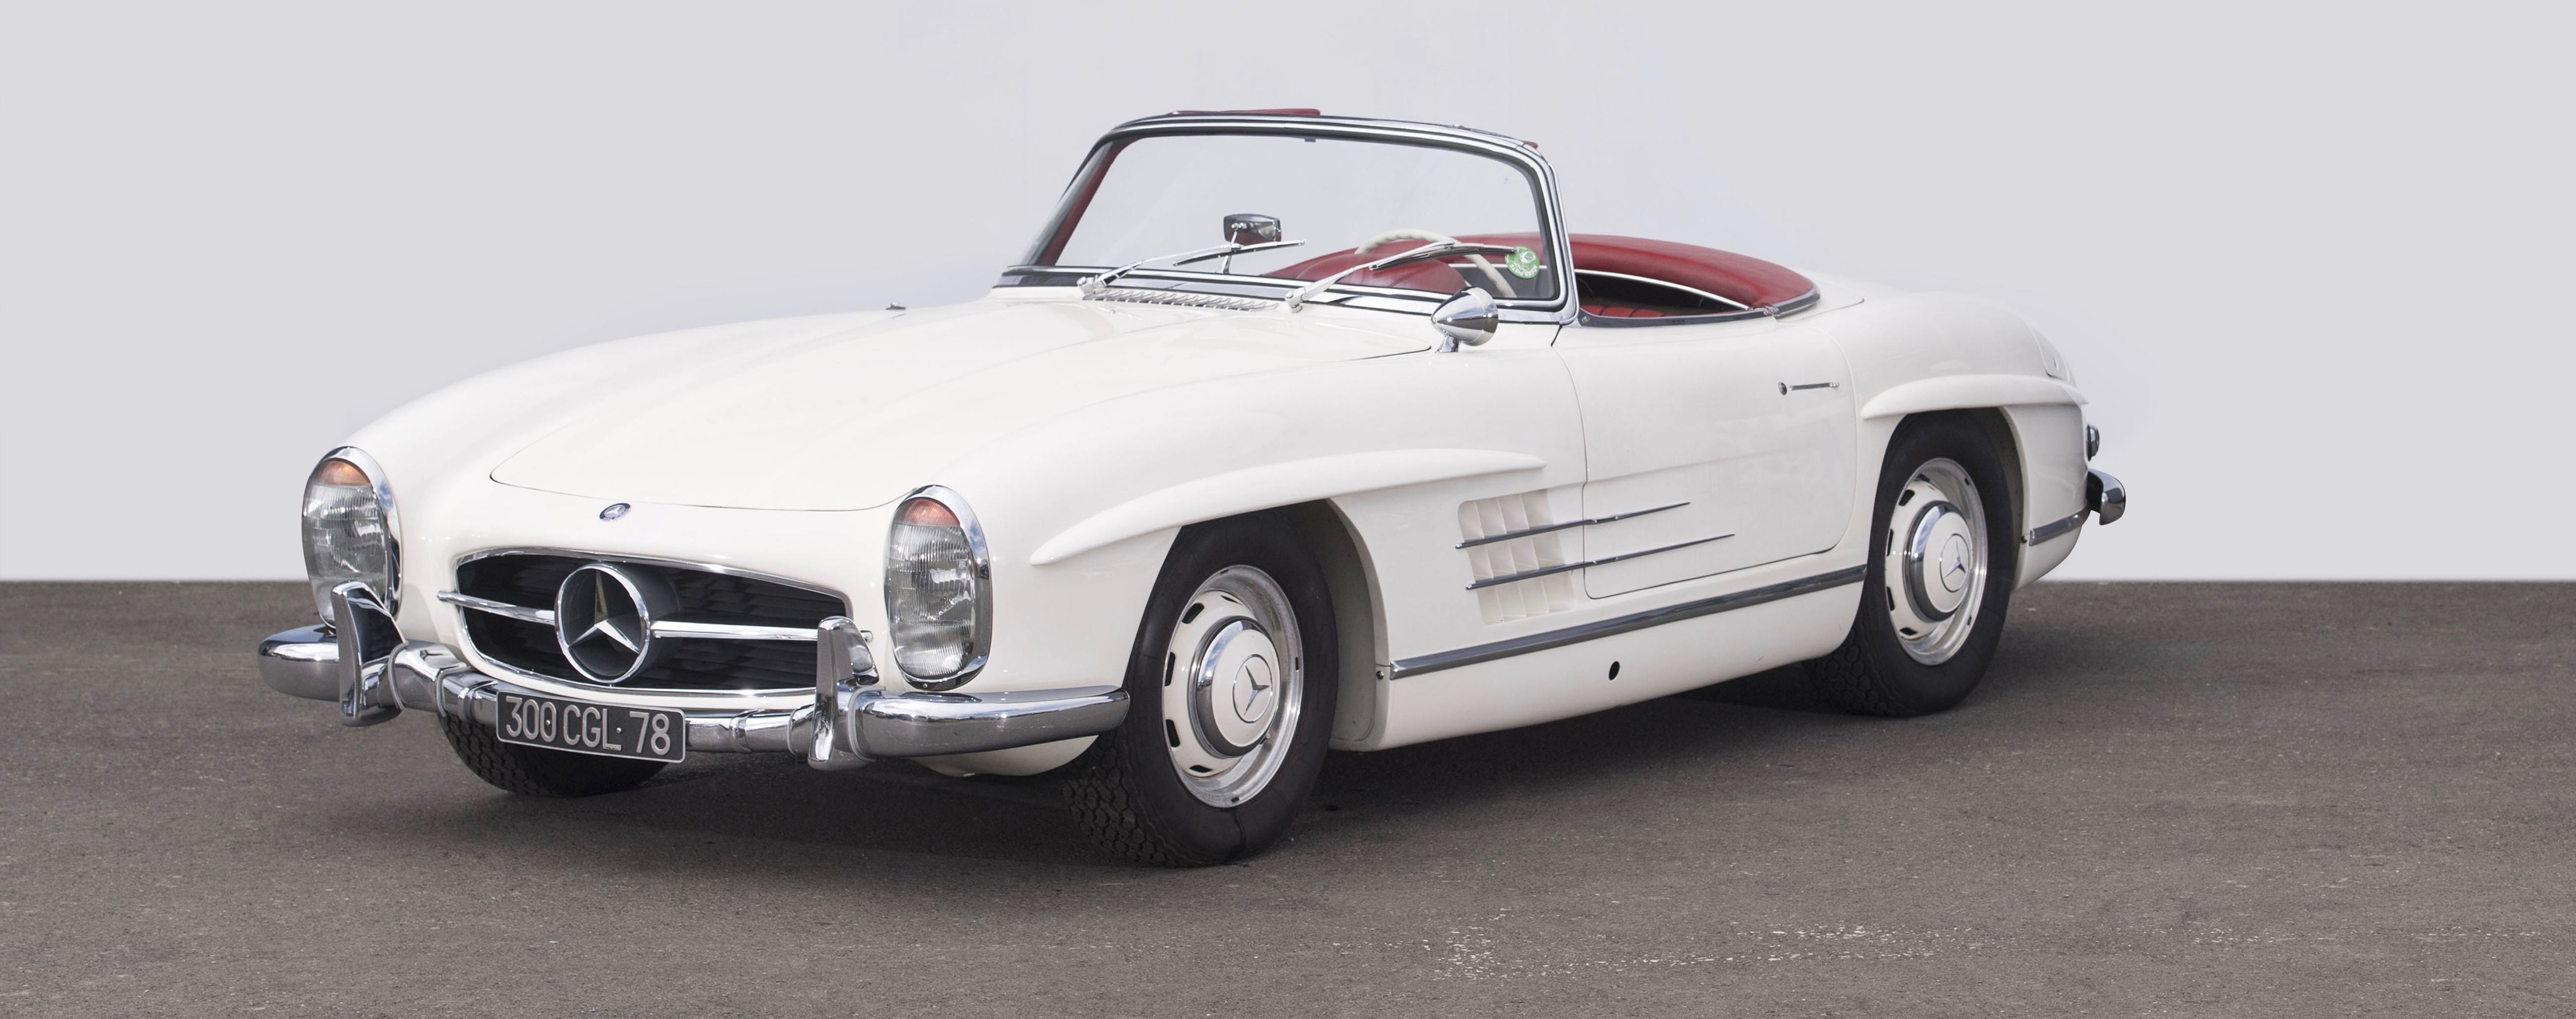 , Million-dollar SLs top Artcurial’s Mercedes-Benz France auction, ClassicCars.com Journal